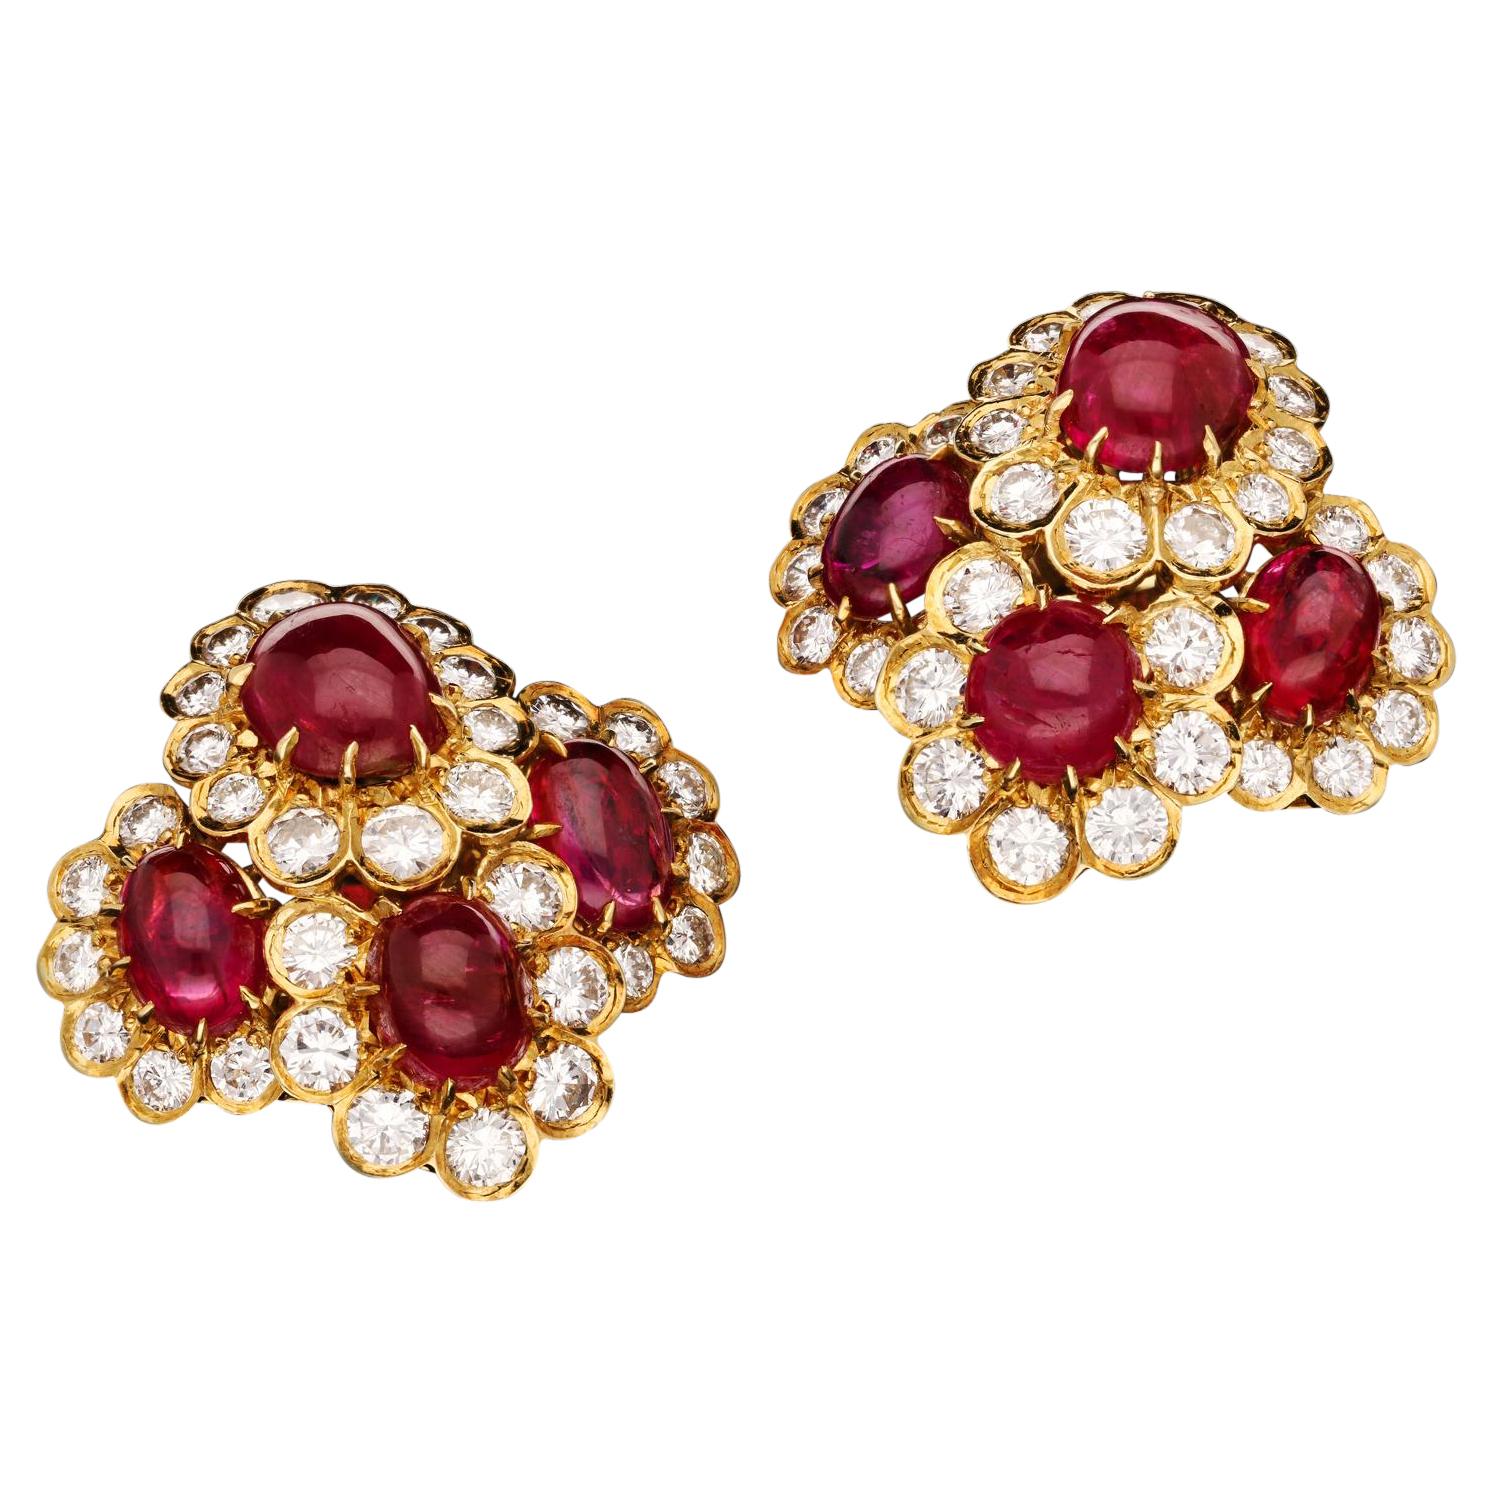 Van Cleef & Arpels, Cabochon Burma Ruby & Diamond Clusters Earrings, circa 1972